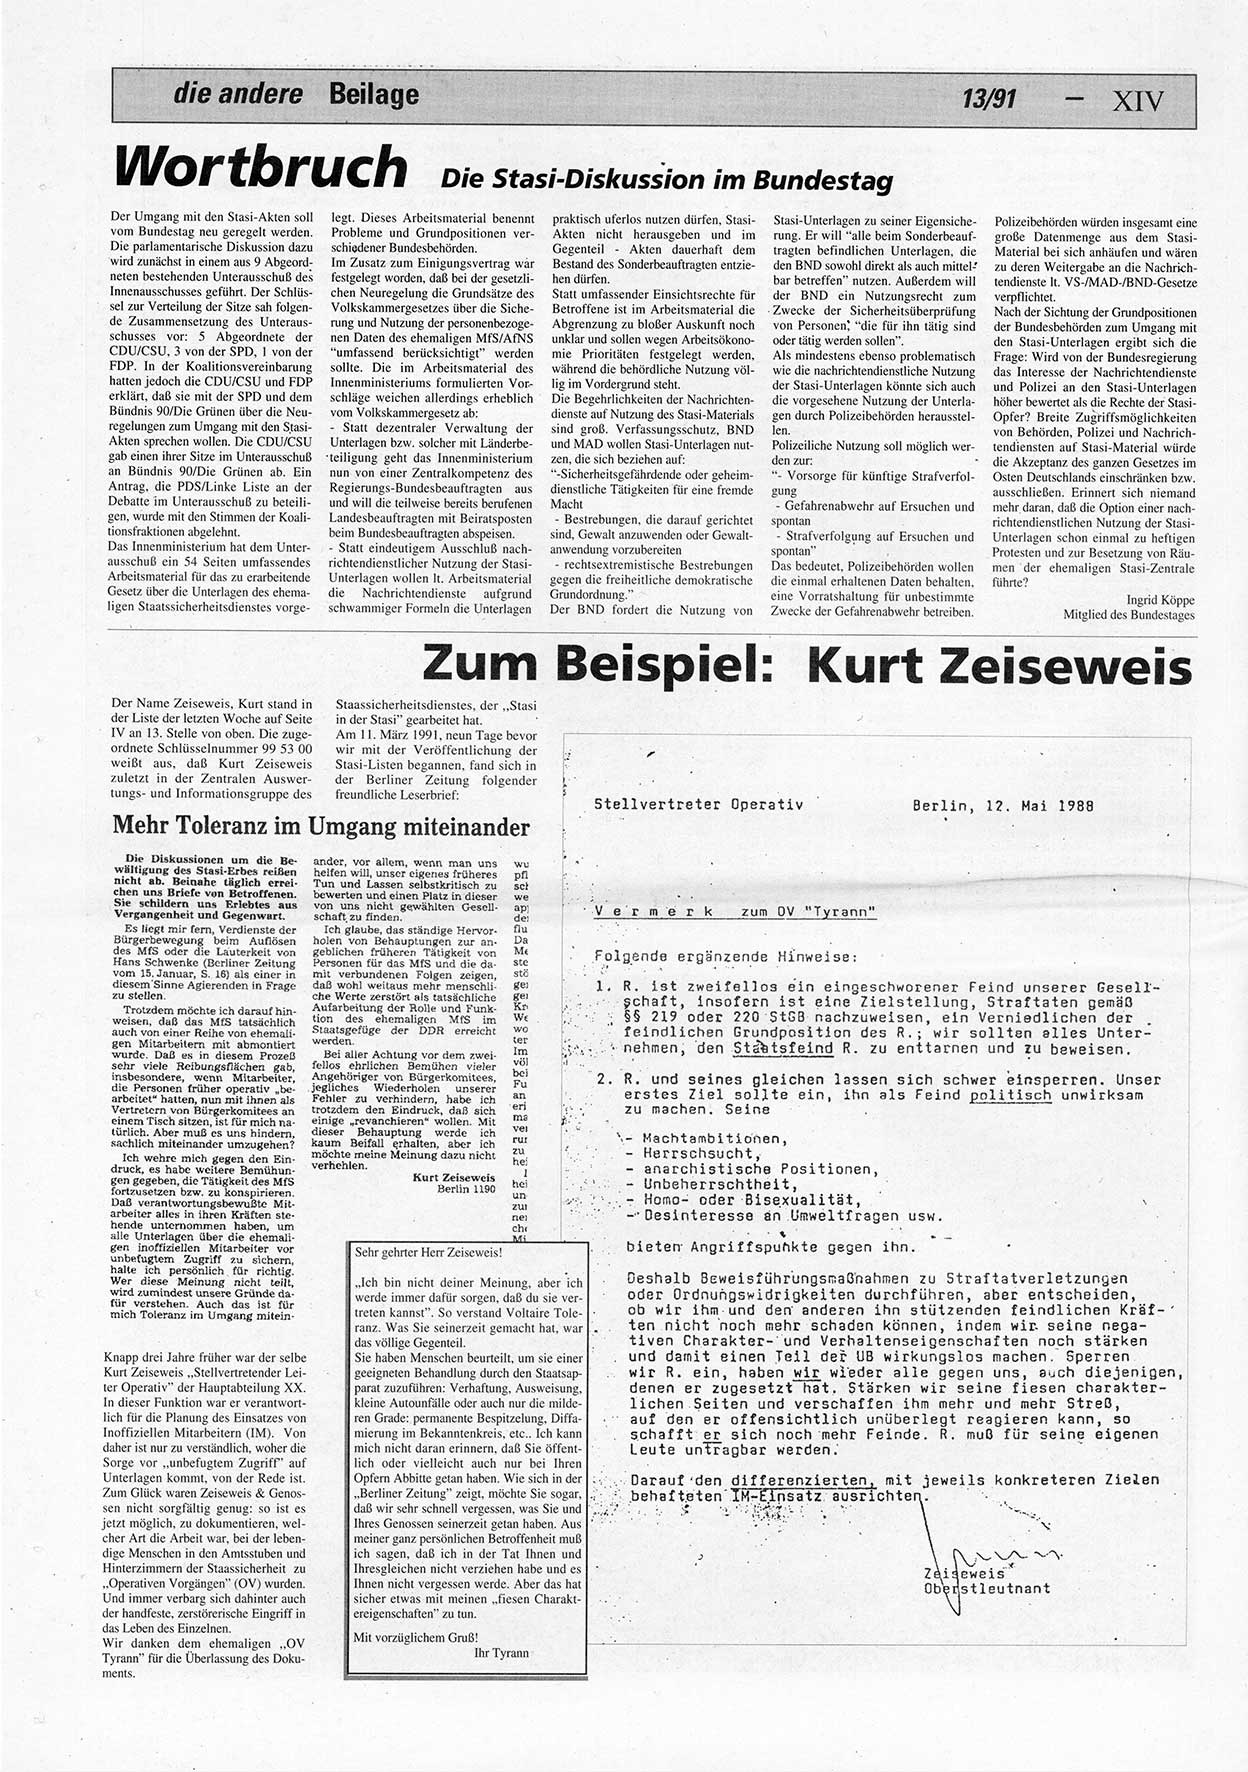 Die Andere, Unabhängige Wochenzeitung für Politik, Kultur und Kunst, Ausgabe 13 vom 27.3.1991, Beilage 4, Seite 14 (And. W.-Zg. Ausg. 13 1991, Beil. S. 14)